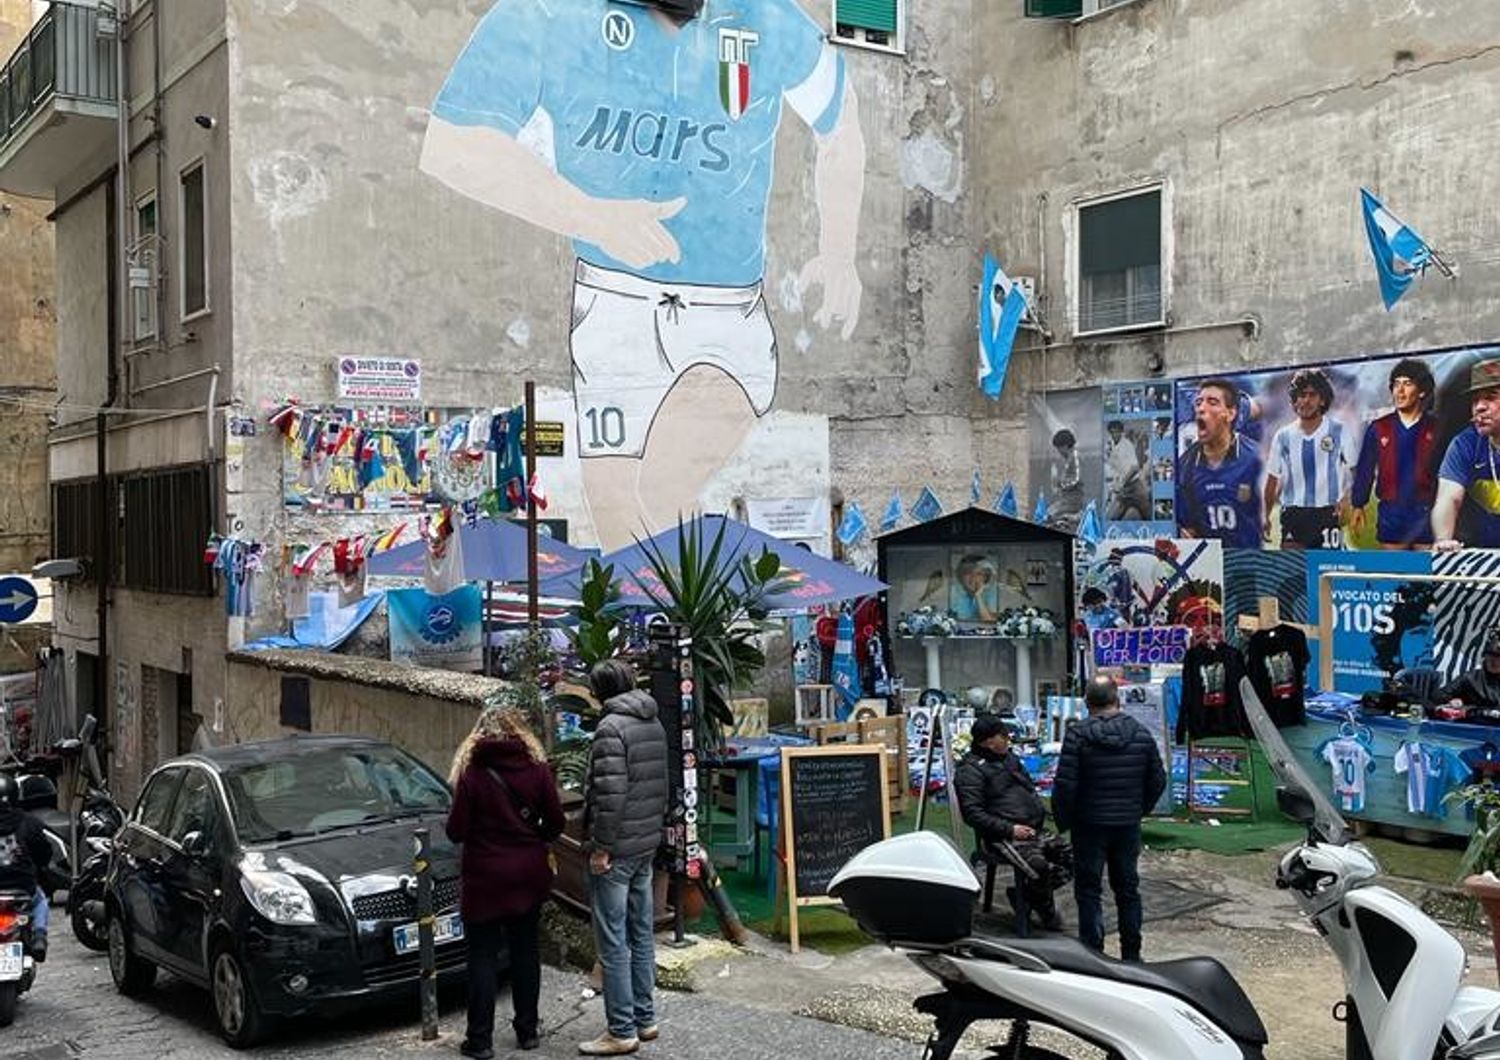 Il murale dedicato a Maradona nei quartieri Spagnoli a Napoli&nbsp;